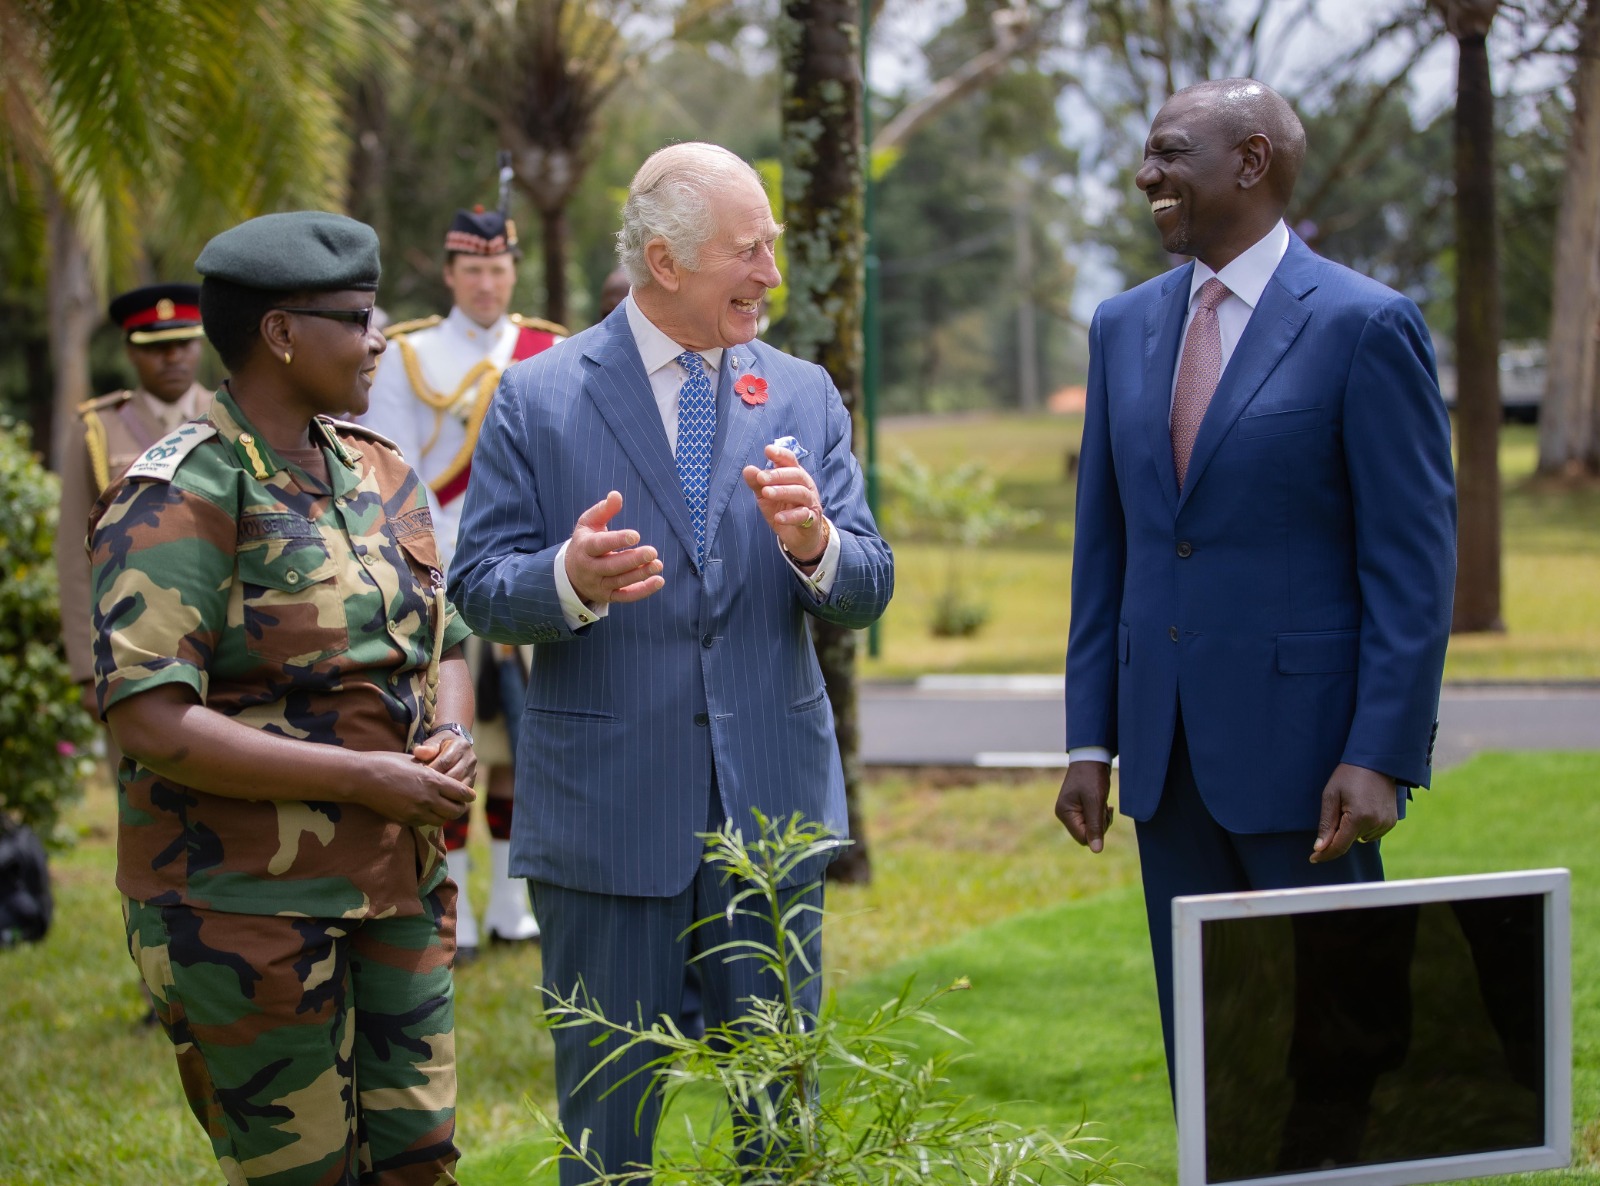 F9wzfatWkAAigCs الملك تشارلز يبدأ زيارة لـ " كينيا " علي خلفية إرث استعماري "مؤلم "